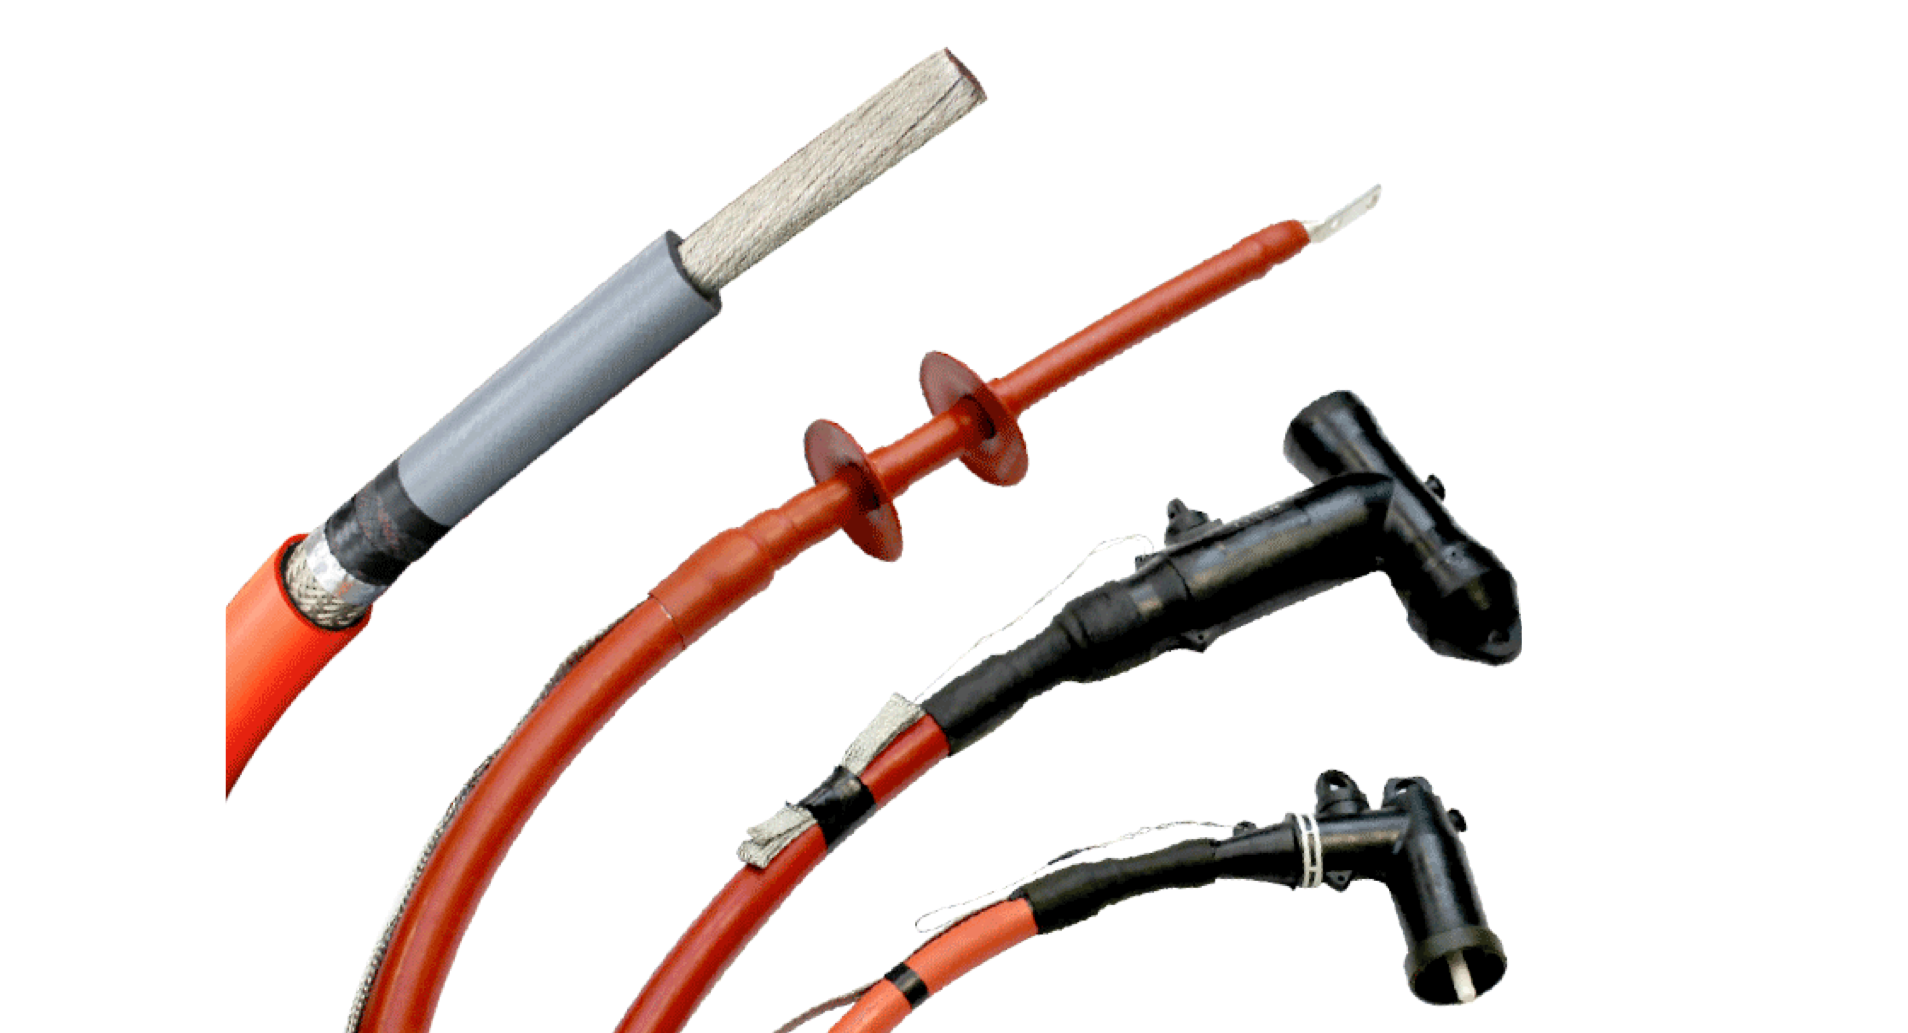 MV cables